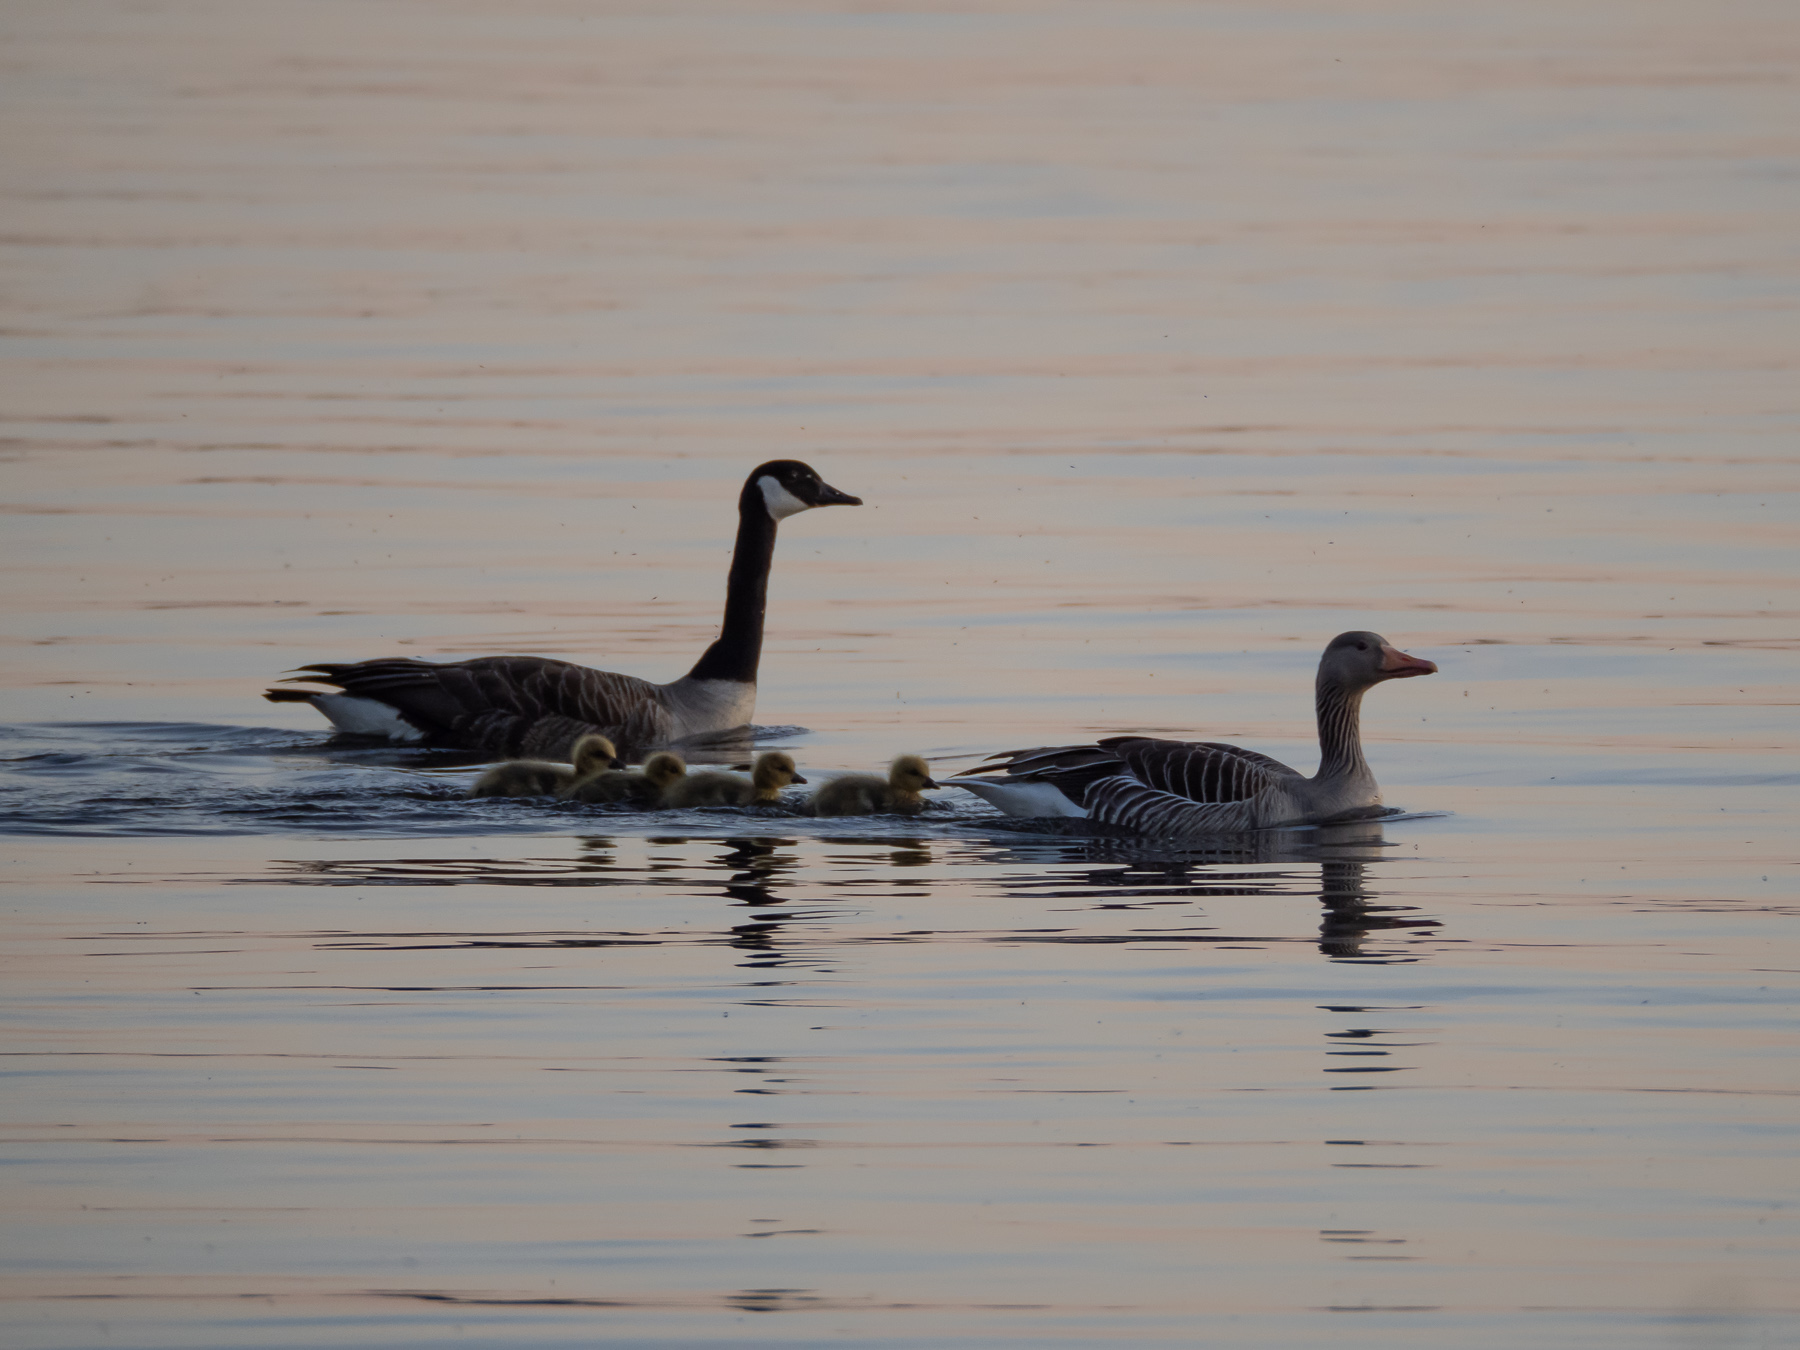 Гибрид серого гуся и канадской казарки (Anser anser x Branta canadensis)Озеро Mälaren, Швеция. Май 2020 г. Автор фото: Сутормина Марина